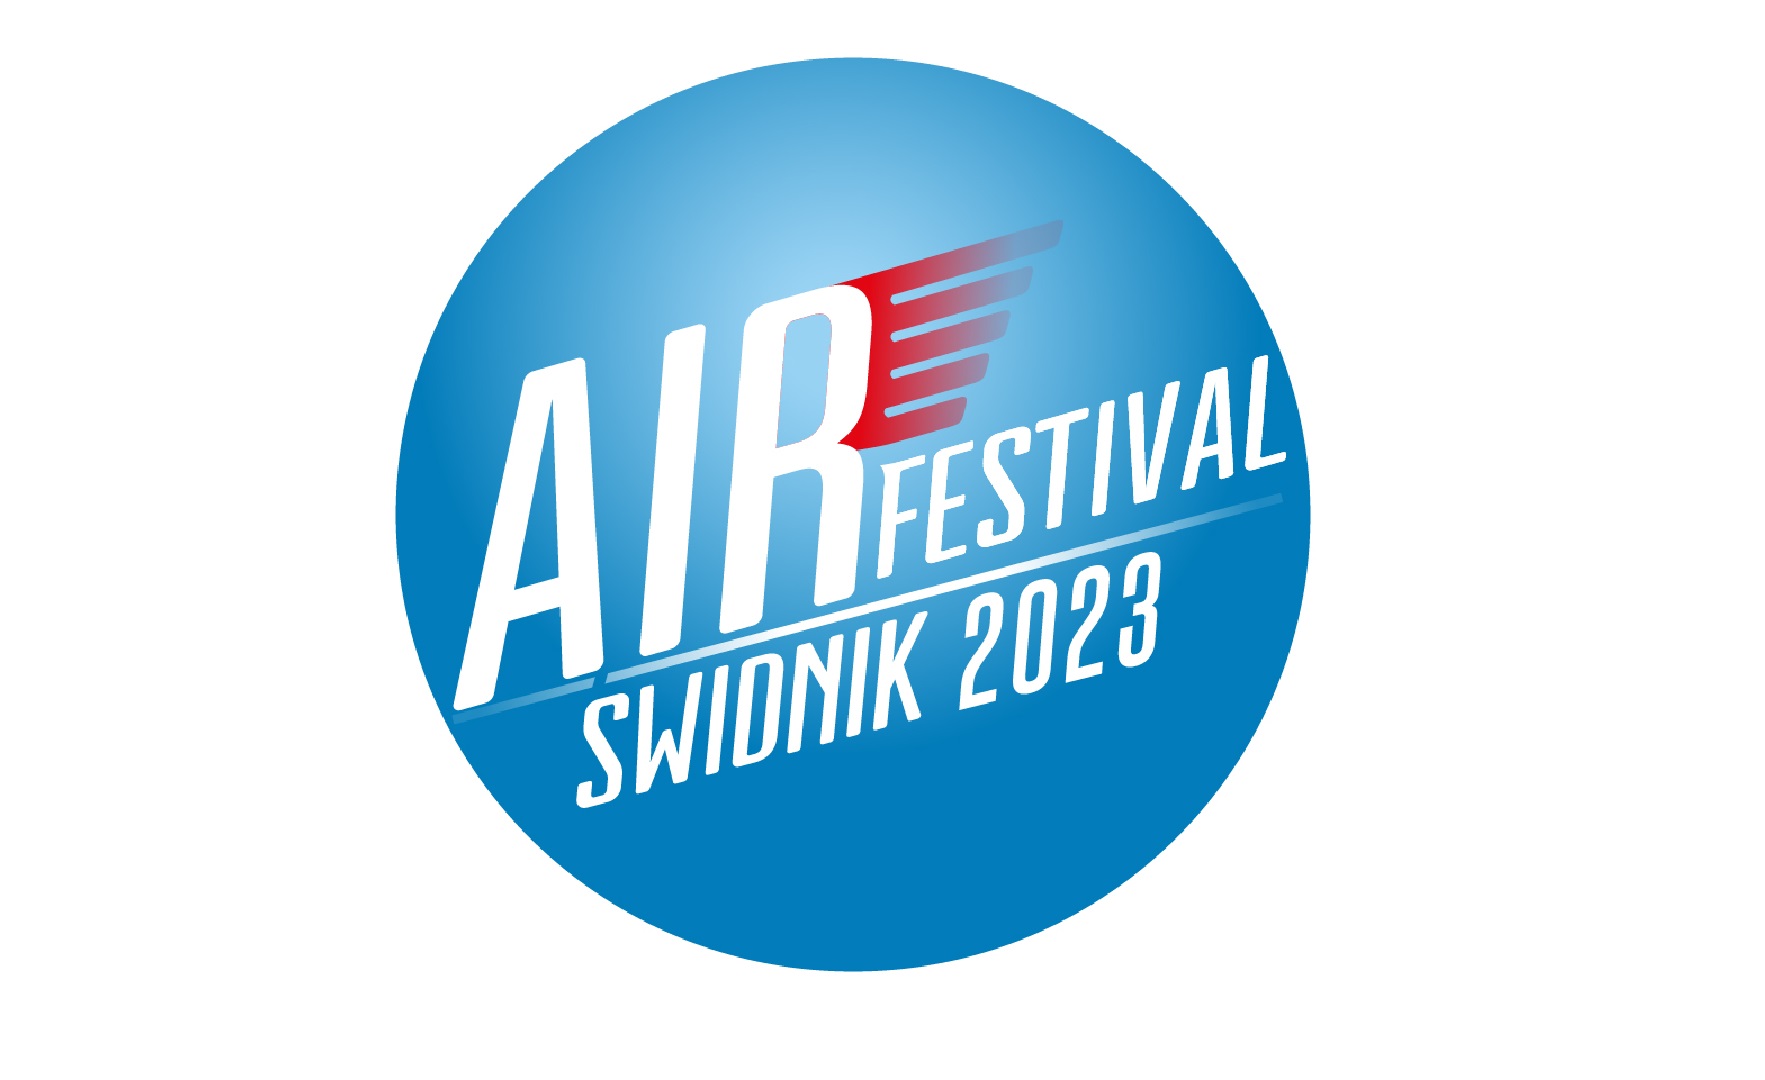 Powrót pociągiem ze Świdnik Air Festival gratis